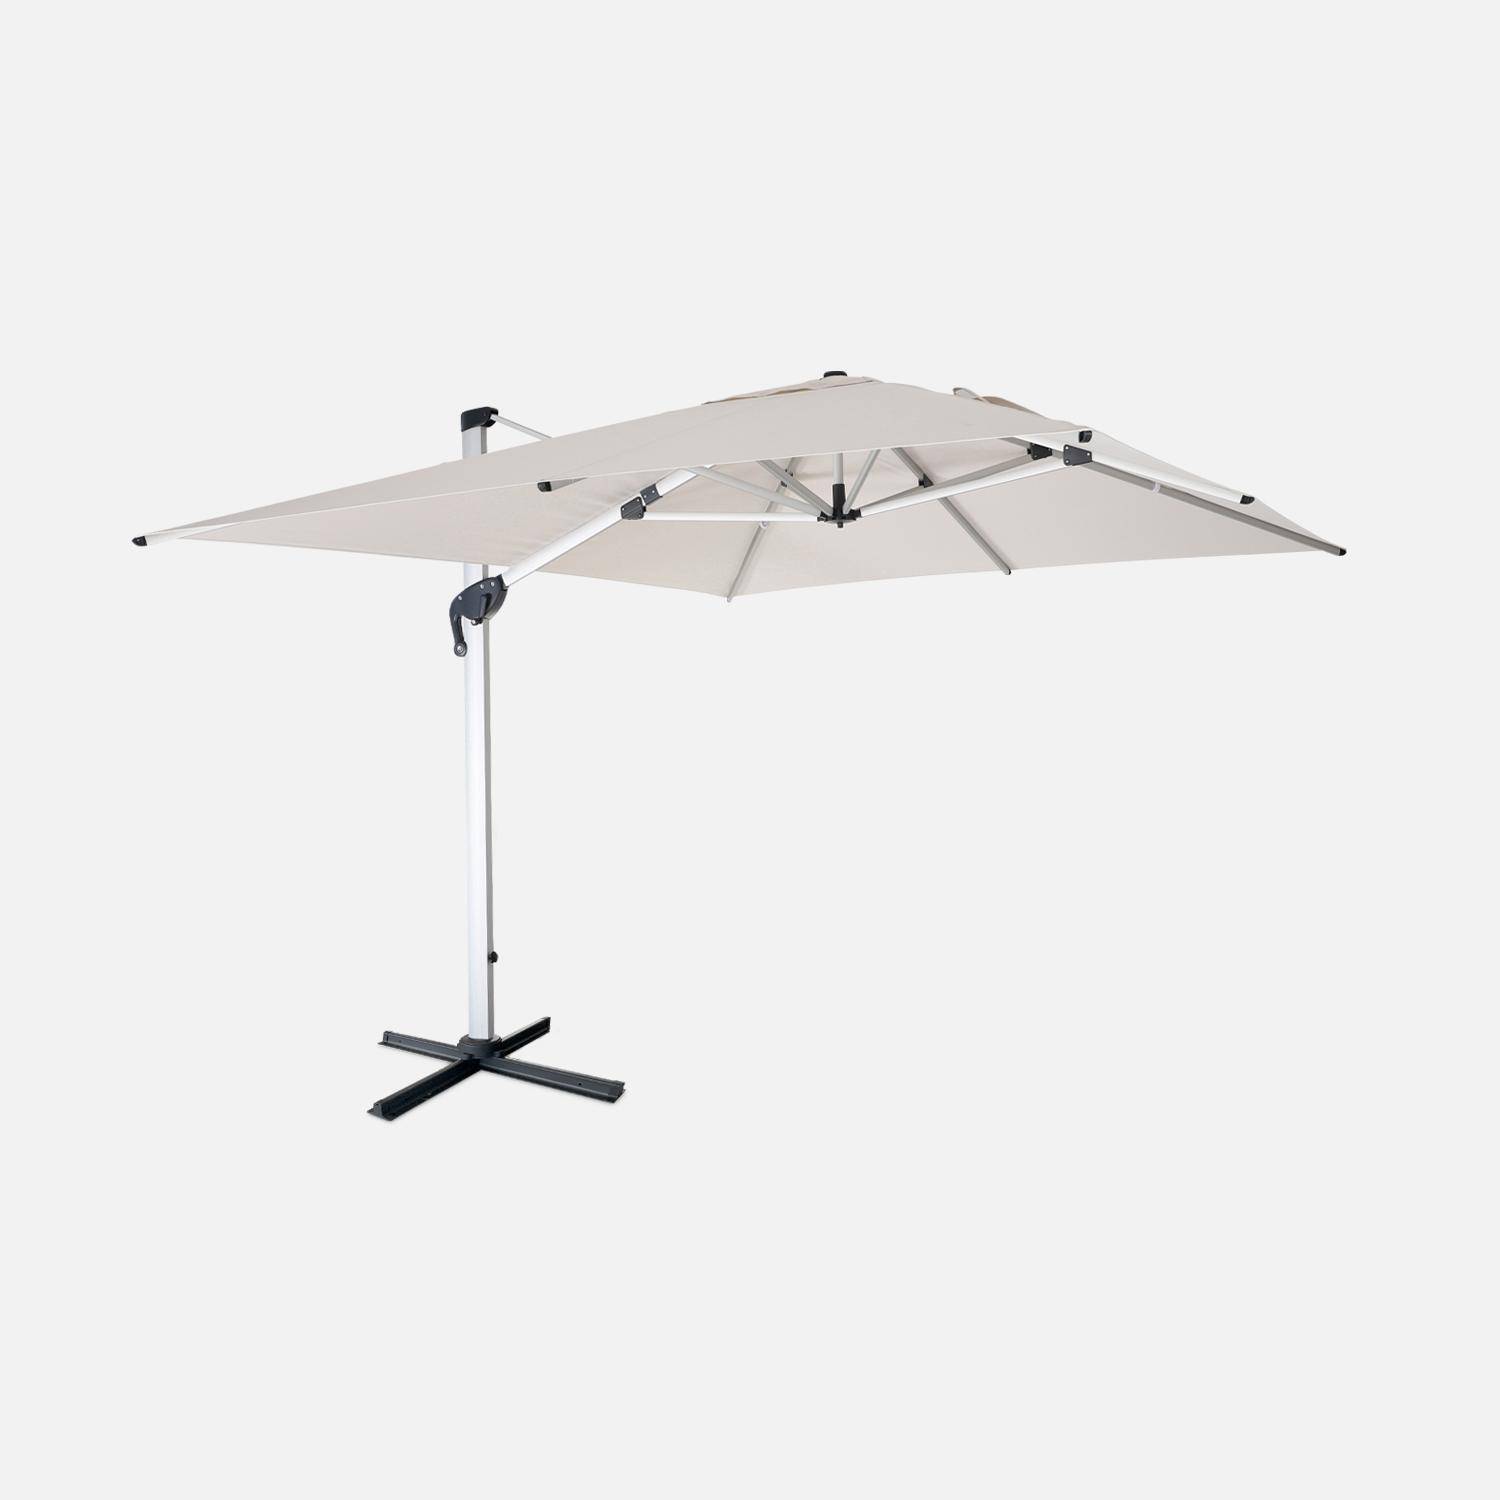 Topkwaliteit parasol, 3x4m, beige polyester doek, geanodiseerd aluminium frame, hoes inbegrepen Photo1